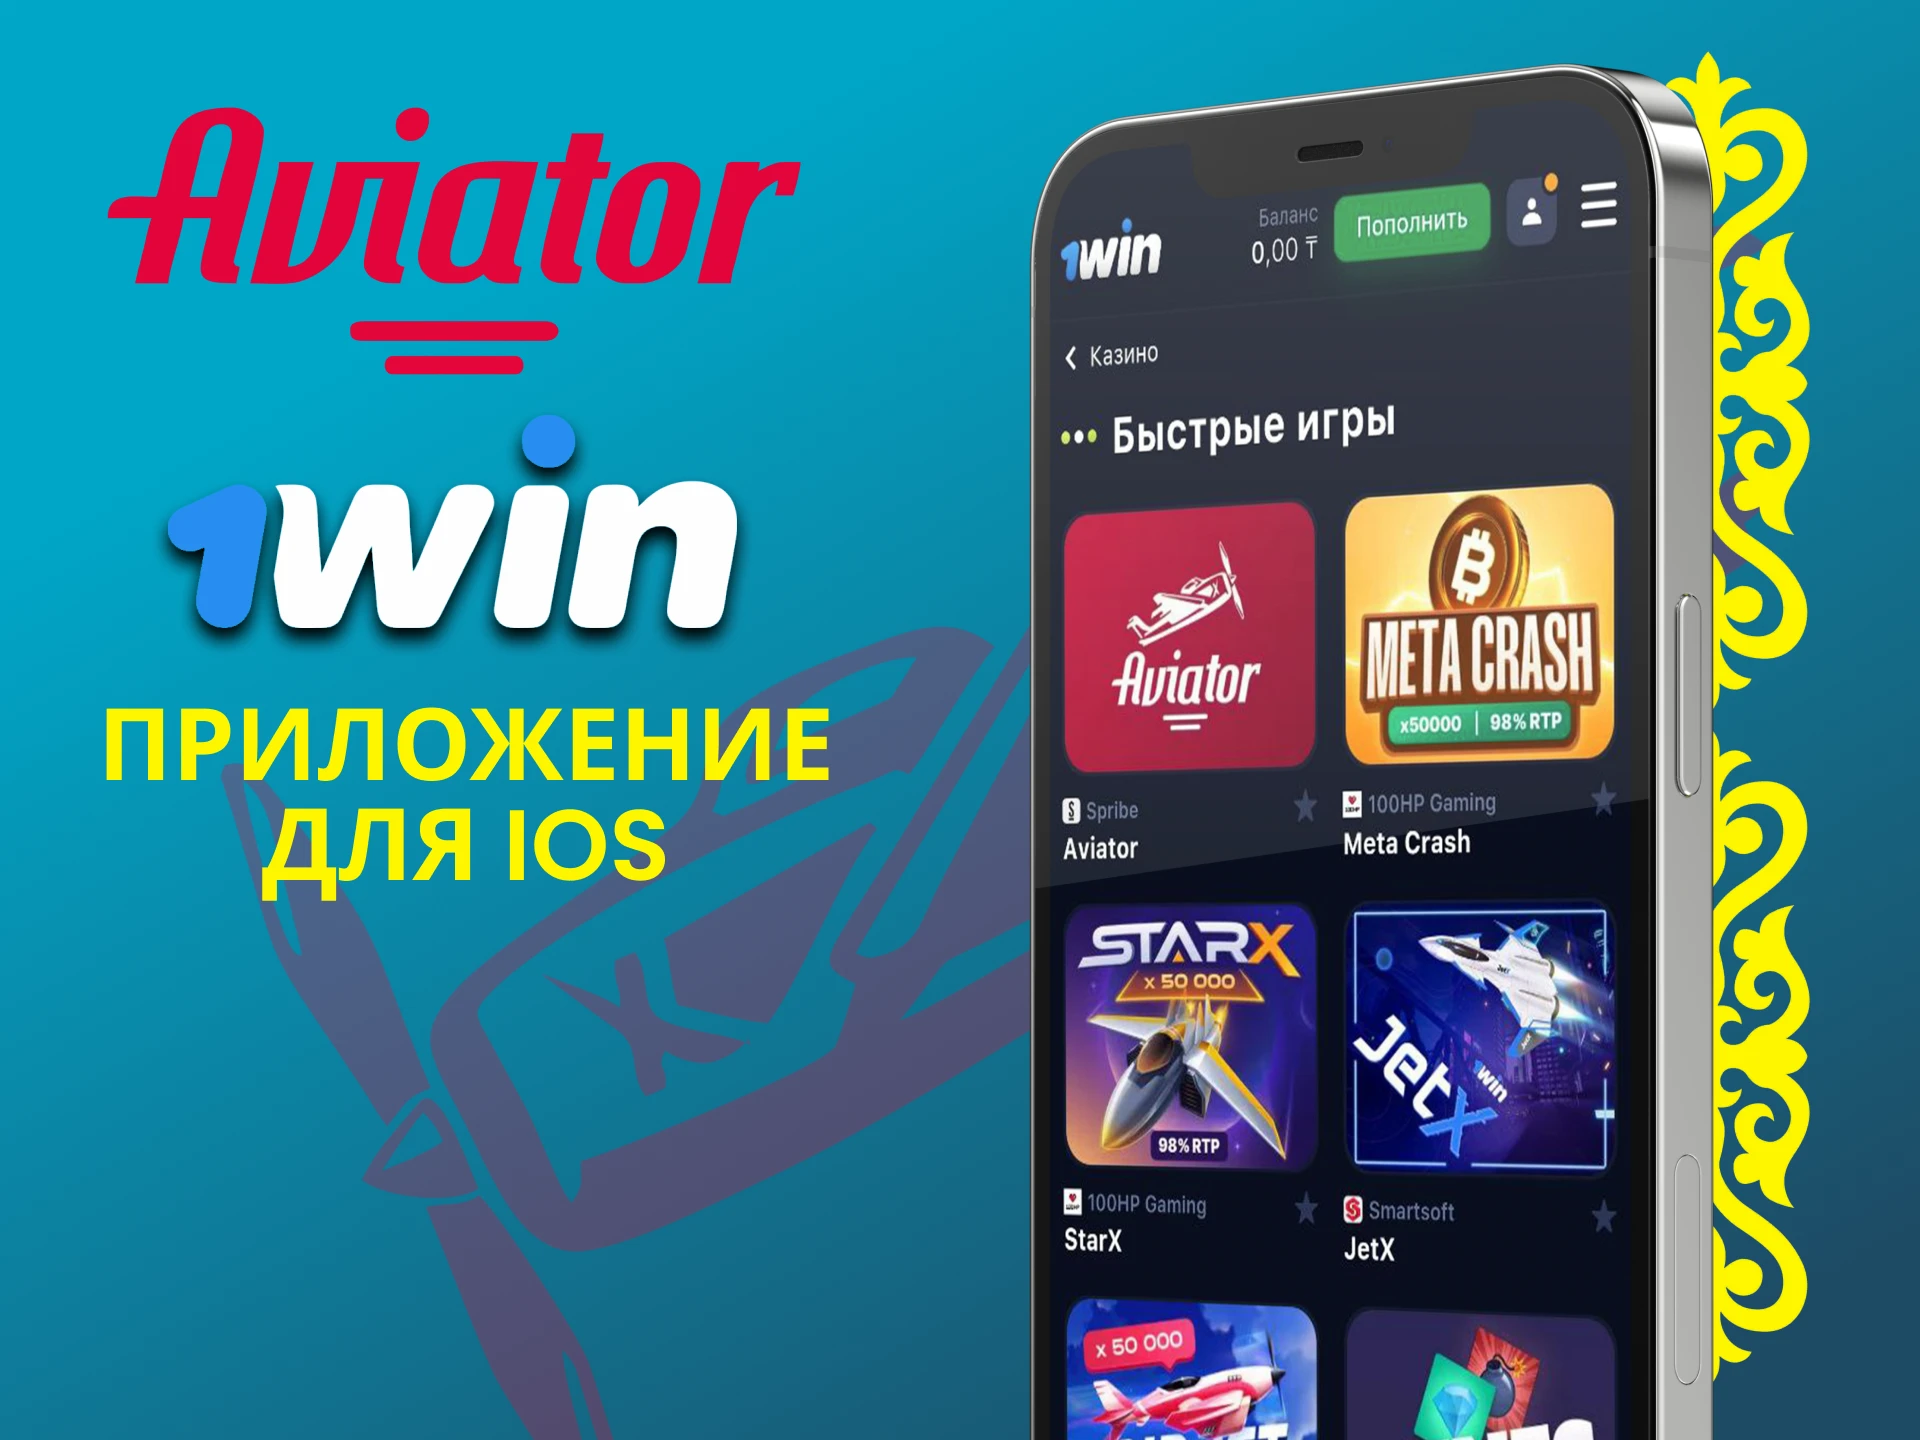 Используйте приложение 1win для игры в Авиатор на iOS.